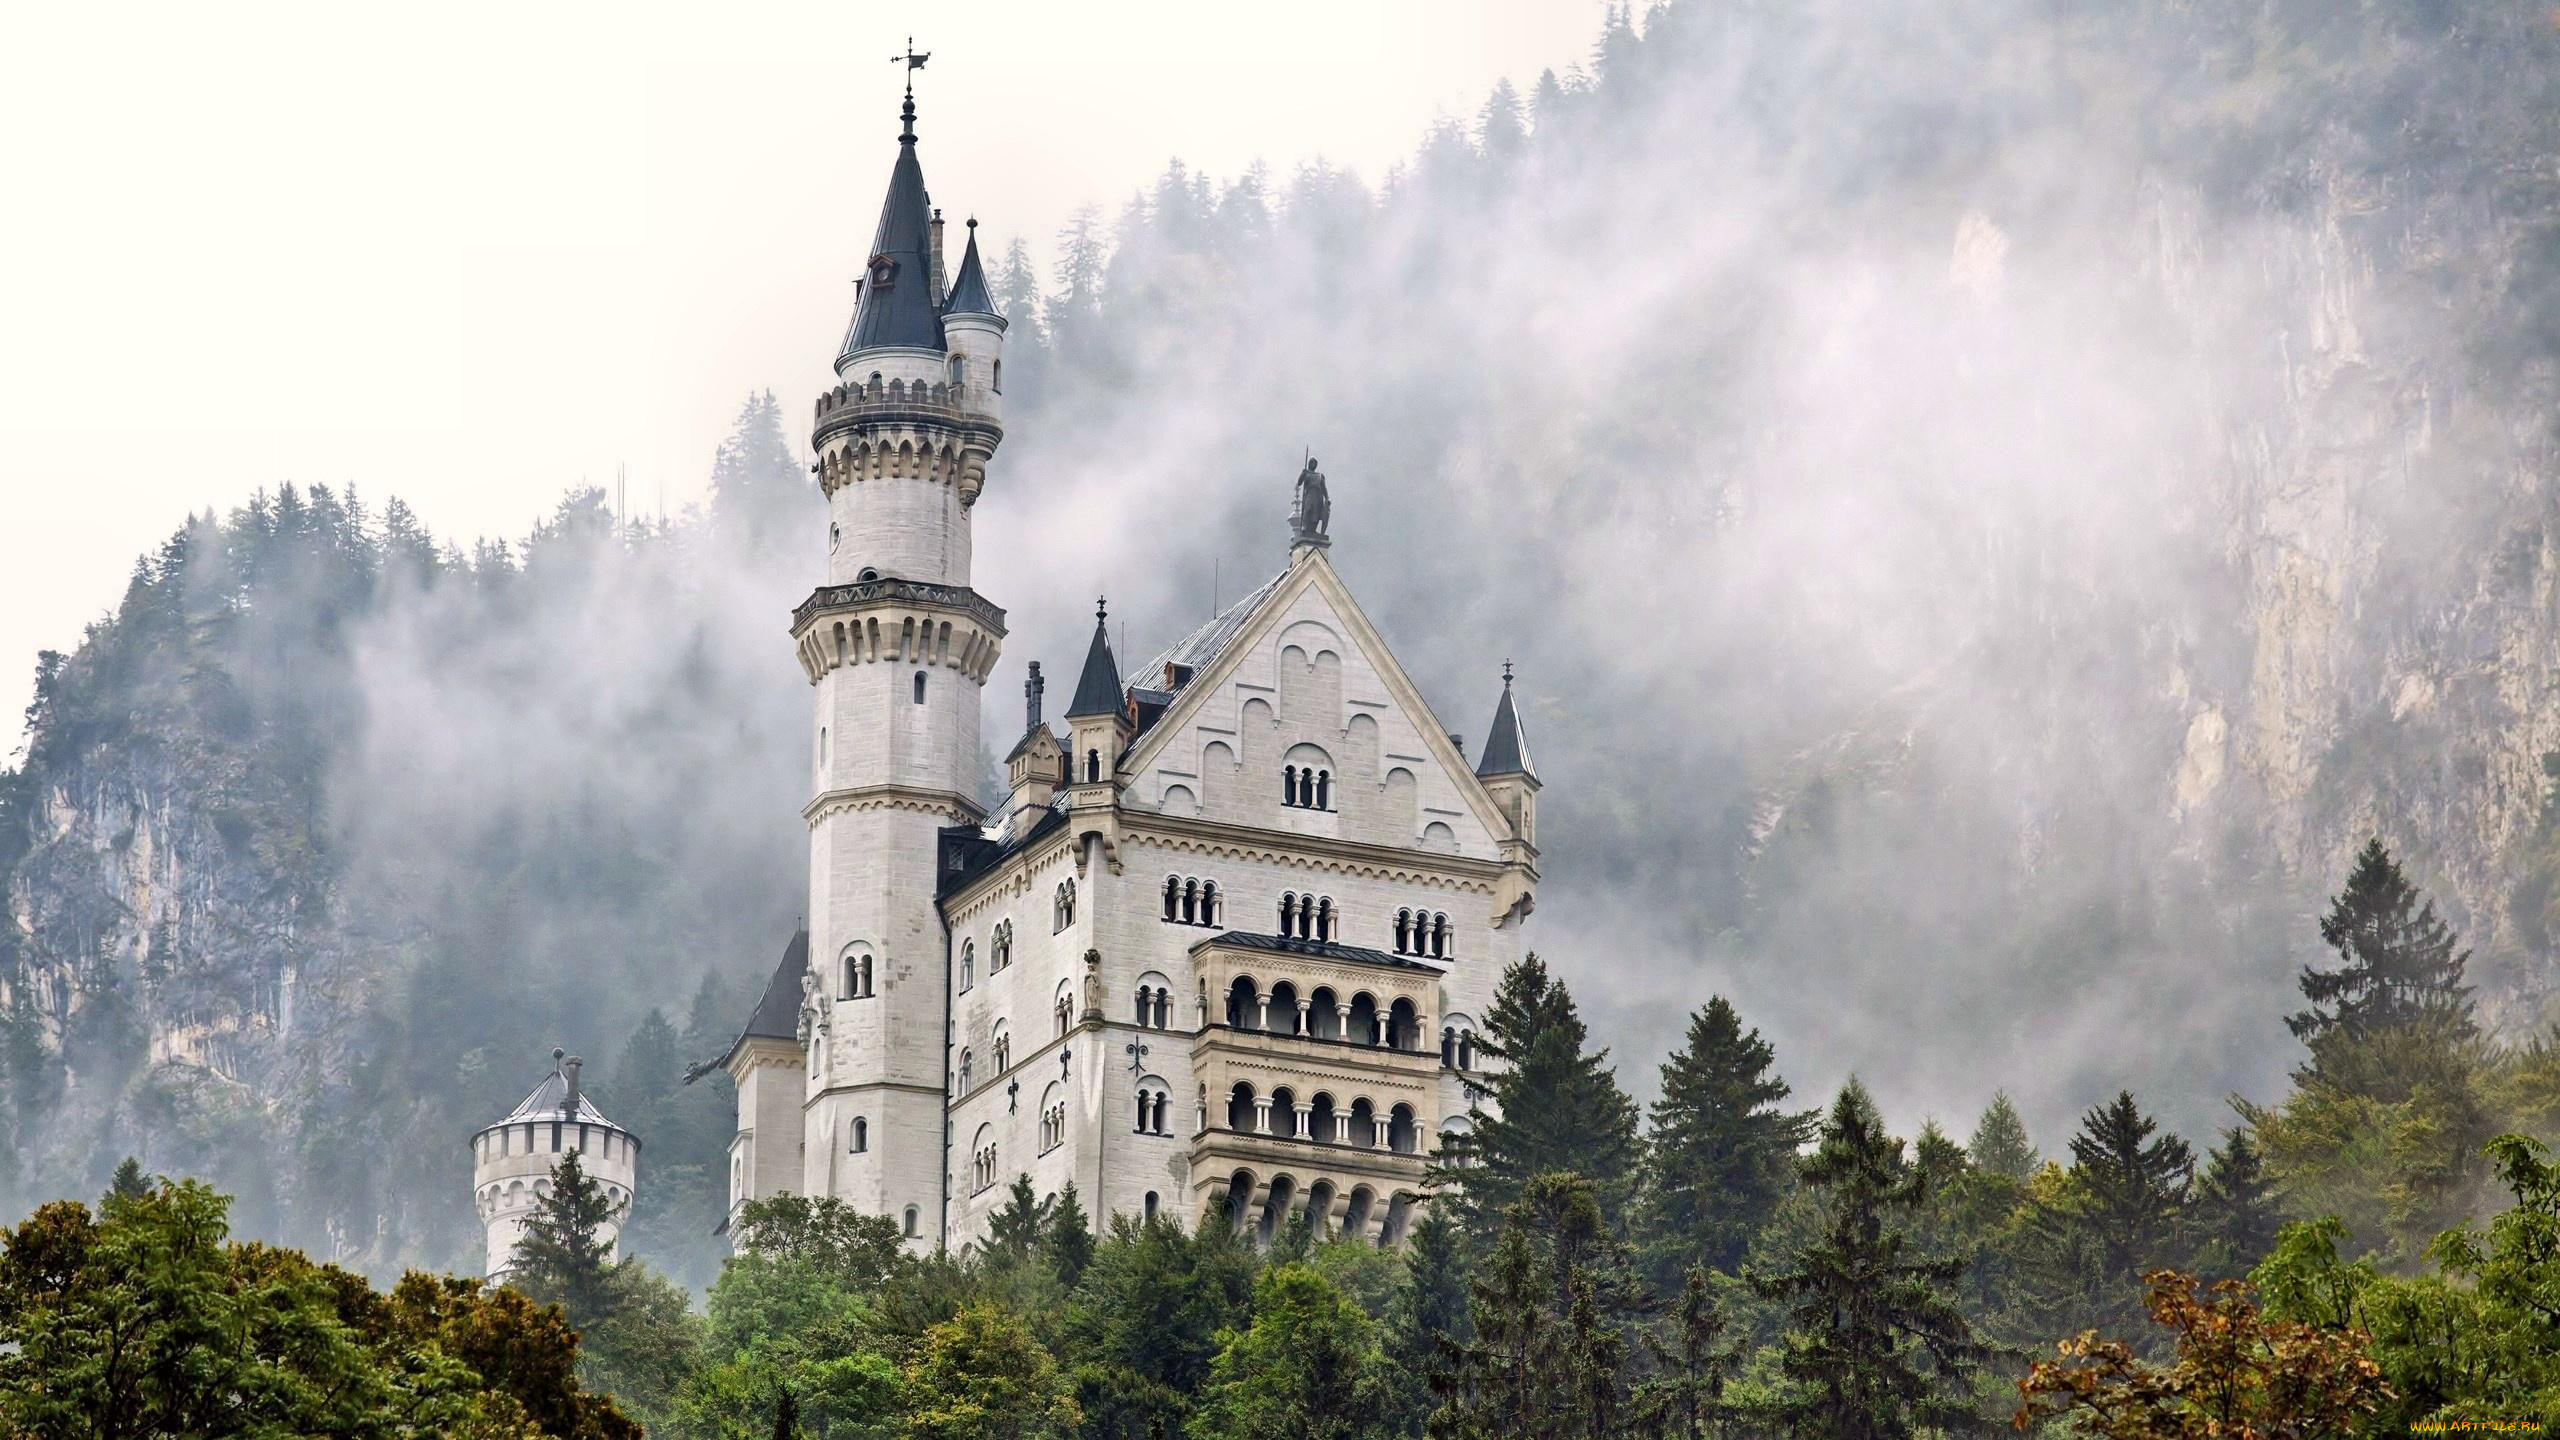 Замок в Германии Нойшванштайн в тумане